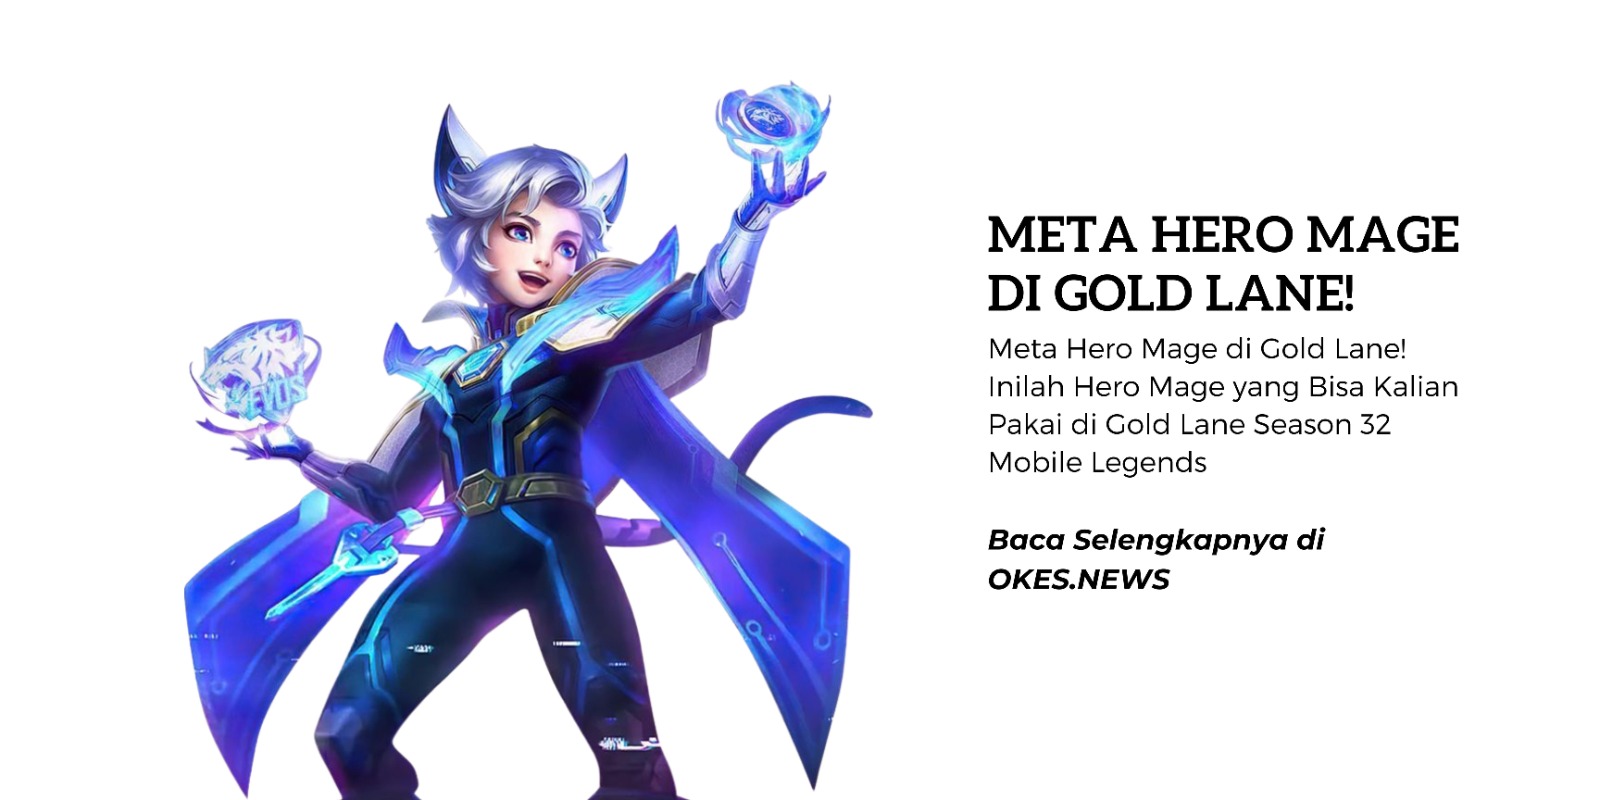 Meta Hero Mage di Gold Lane! Inilah Hero Mage yang Bisa Kalian Pakai di Gold Lane Season 32 Mobile Legends